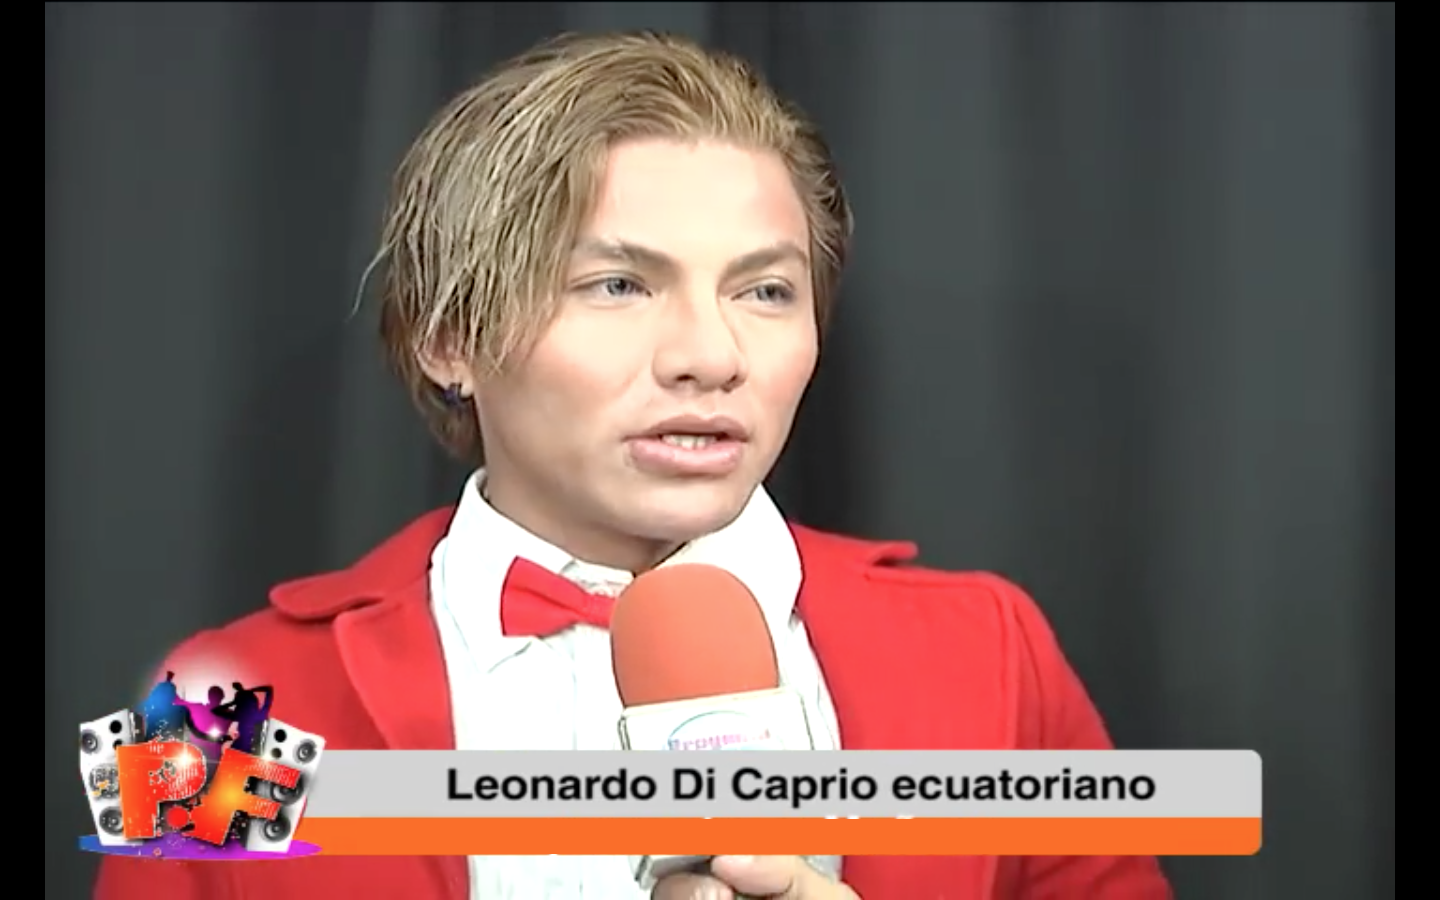 Leonardo DiCaprio ecuatoriano irá a Hollywood a reclamar su Oscar